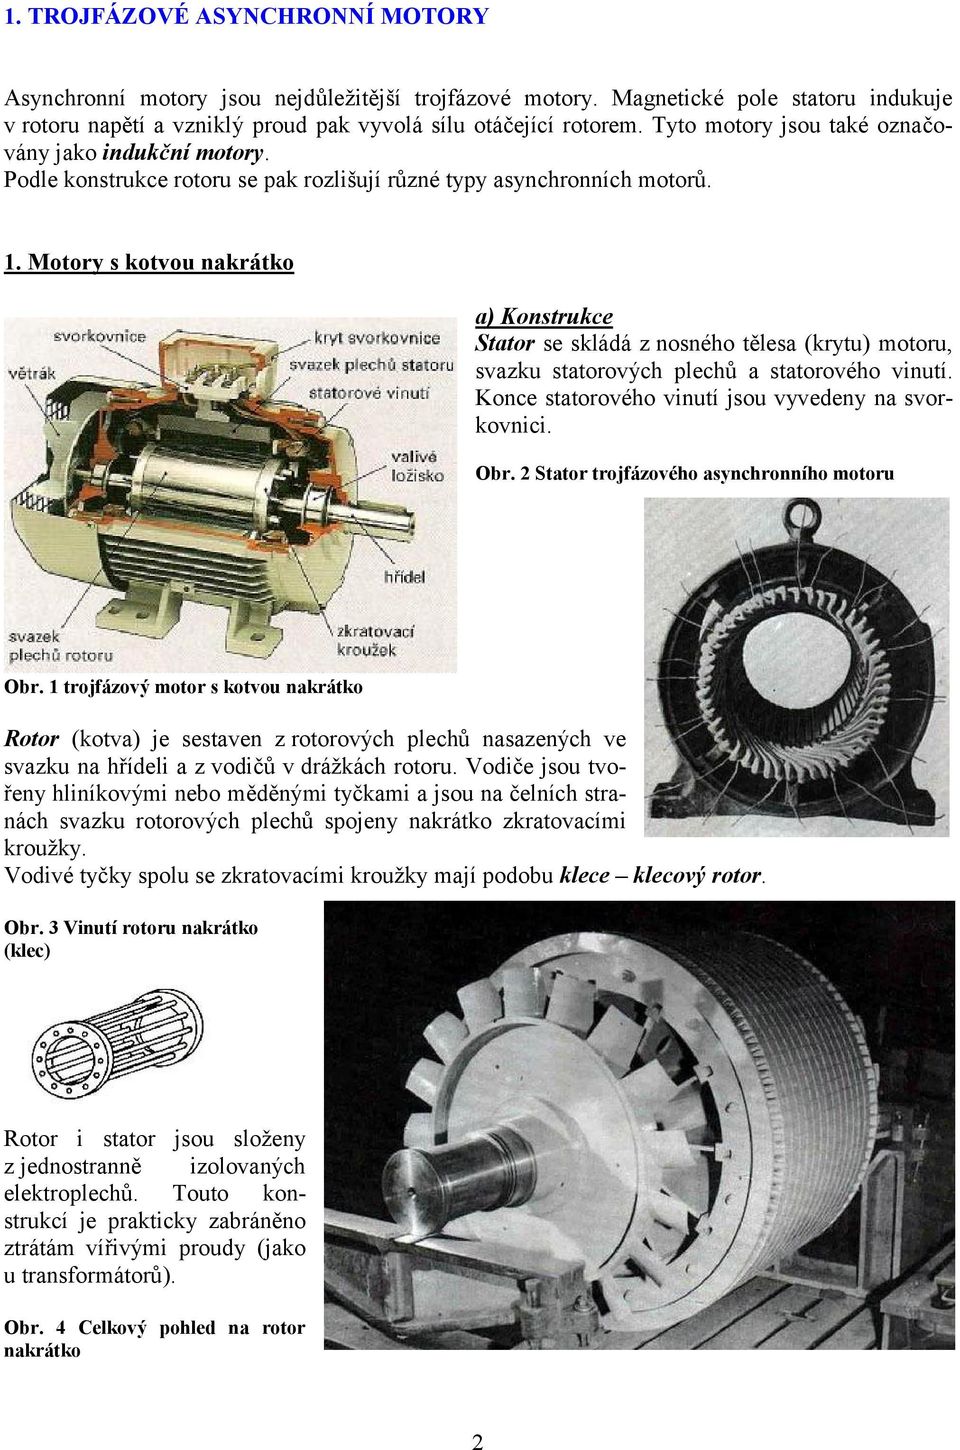 Motory s kotvou nakrátko a) Konstrukce Stator se skládá z nosného tělesa (krytu) motoru, svazku statorových plechů a statorového vinutí. Konce statorového vinutí jsou vyvedeny na svorkovnici. Obr.